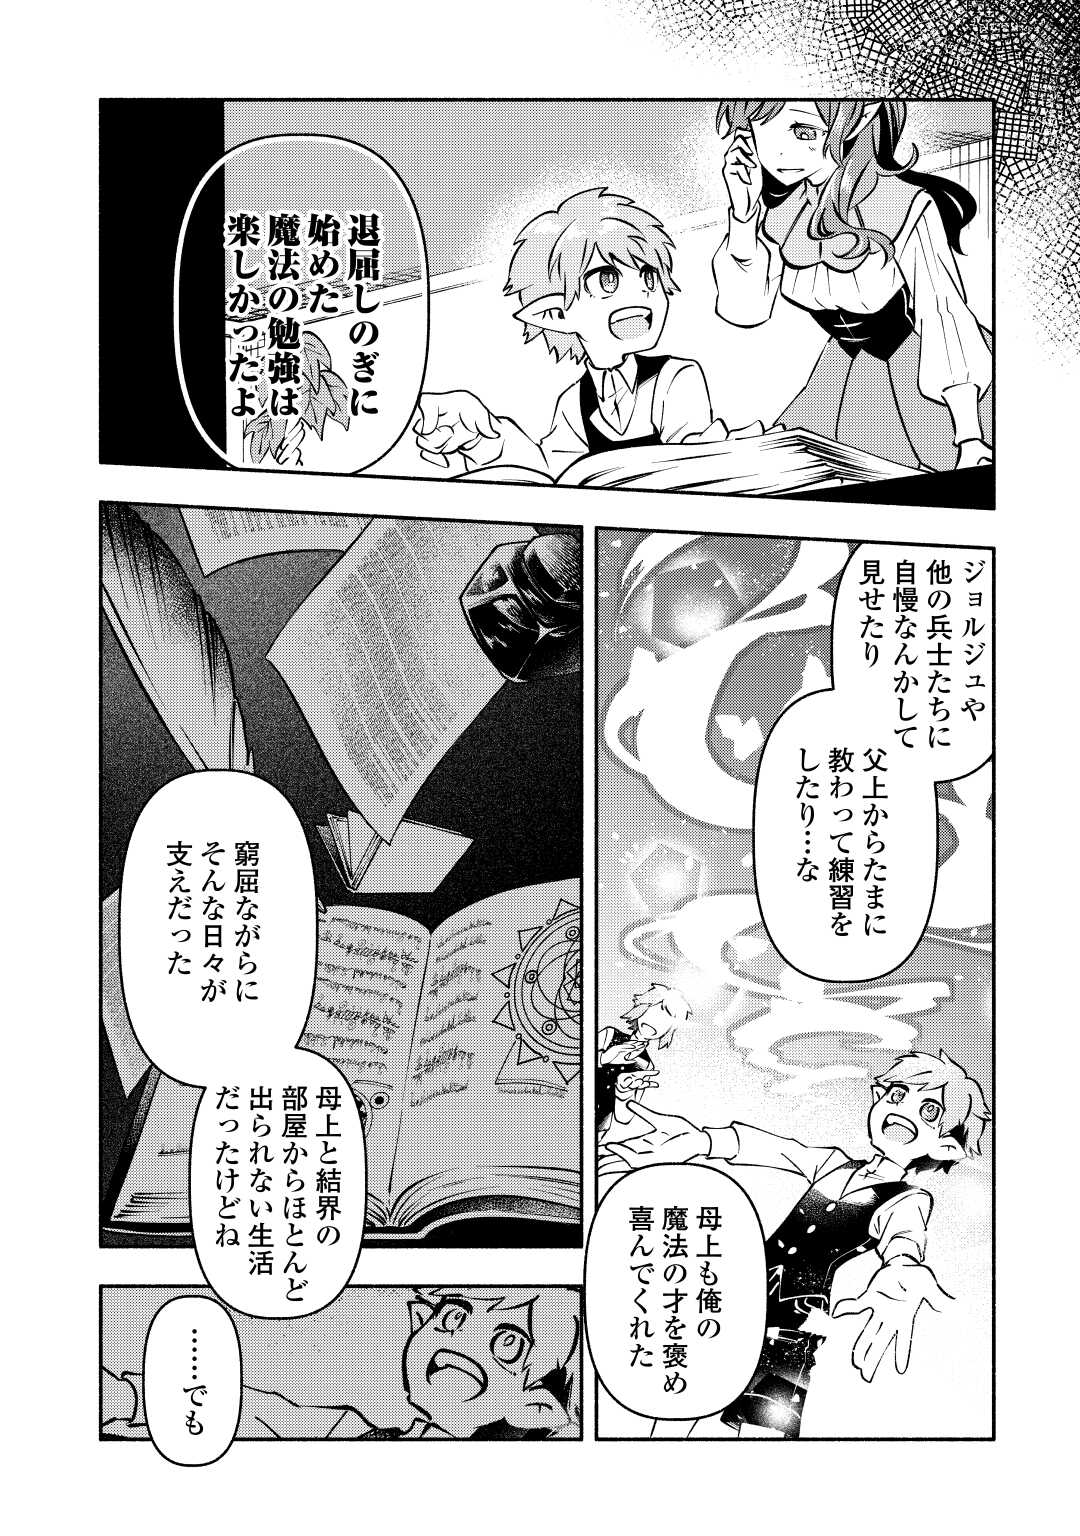 Osanago wa Saikyou no Tamer da to Kizuiteimasen! - Chapter 11 - Page 8